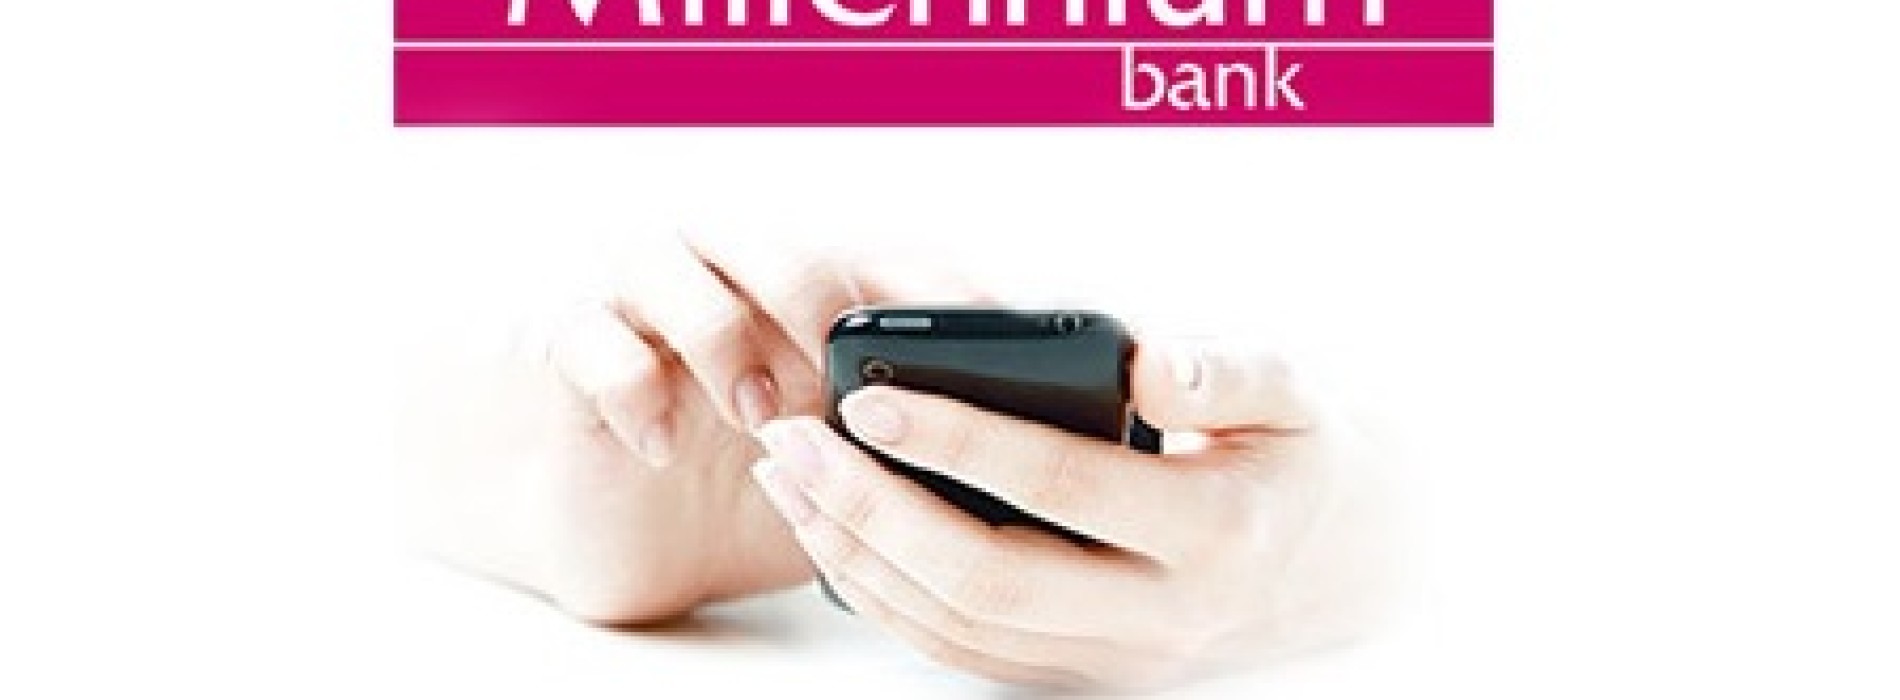 Wypłata mobilna z bankomatów Banku Millennium